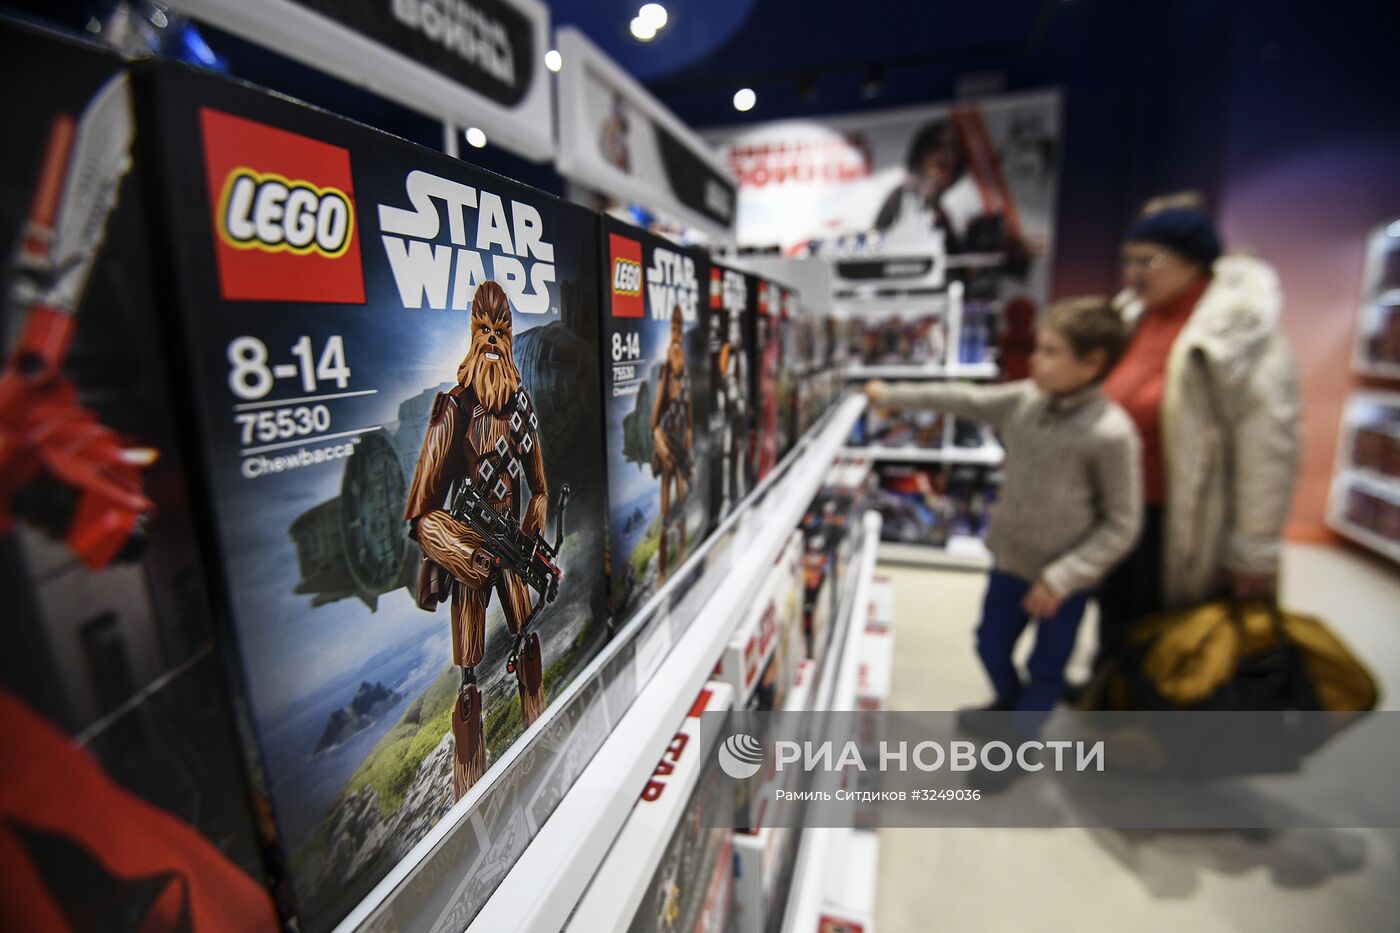 Фирменный магазин Disney открылся в Москве